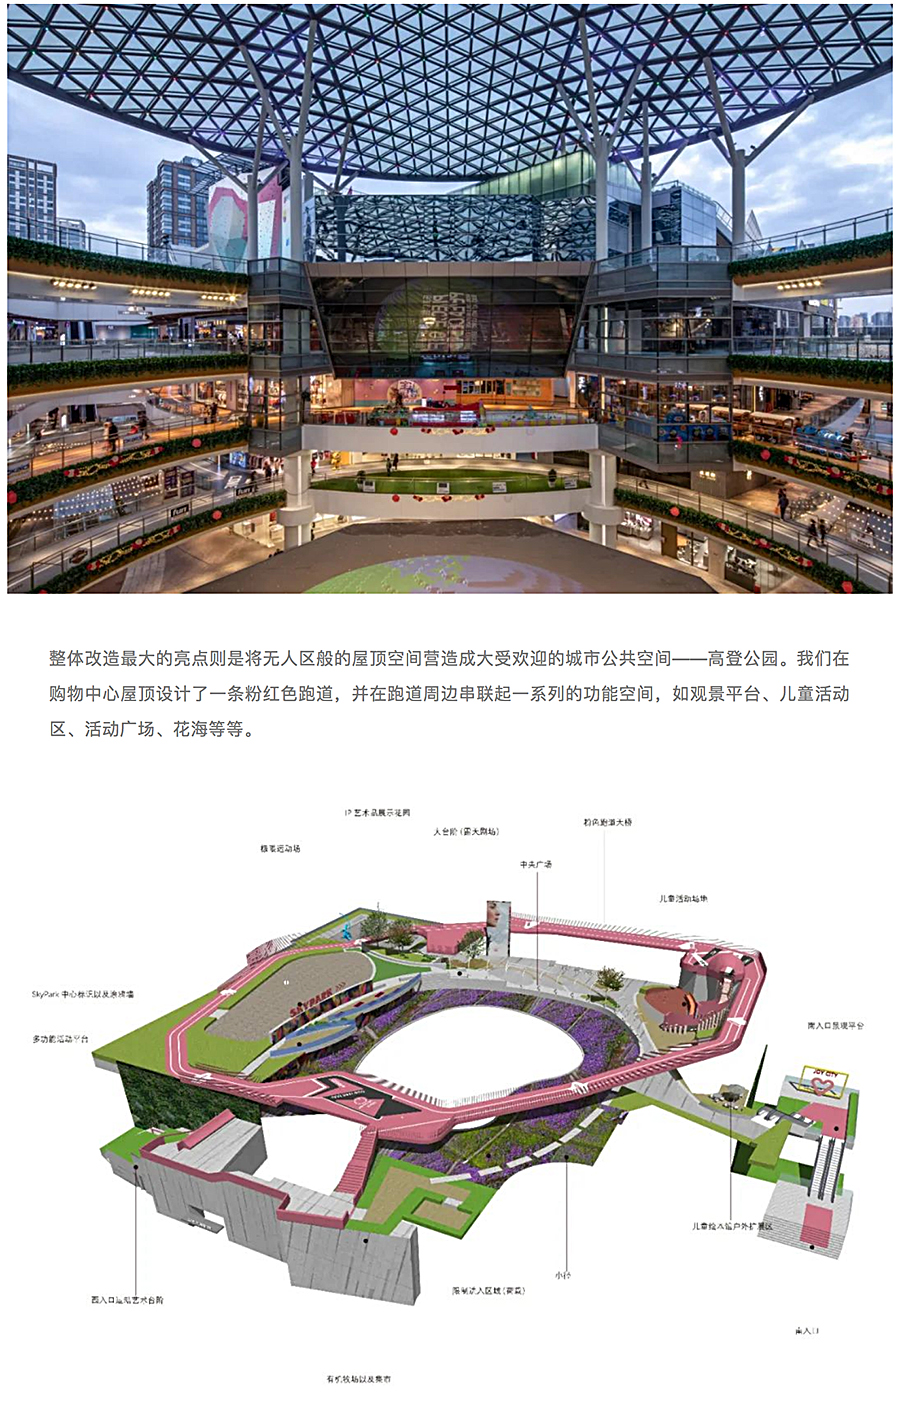 上海长风大悦城-_-AICO-2020-REARD金奖项目赏析_0004_图层-5.jpg